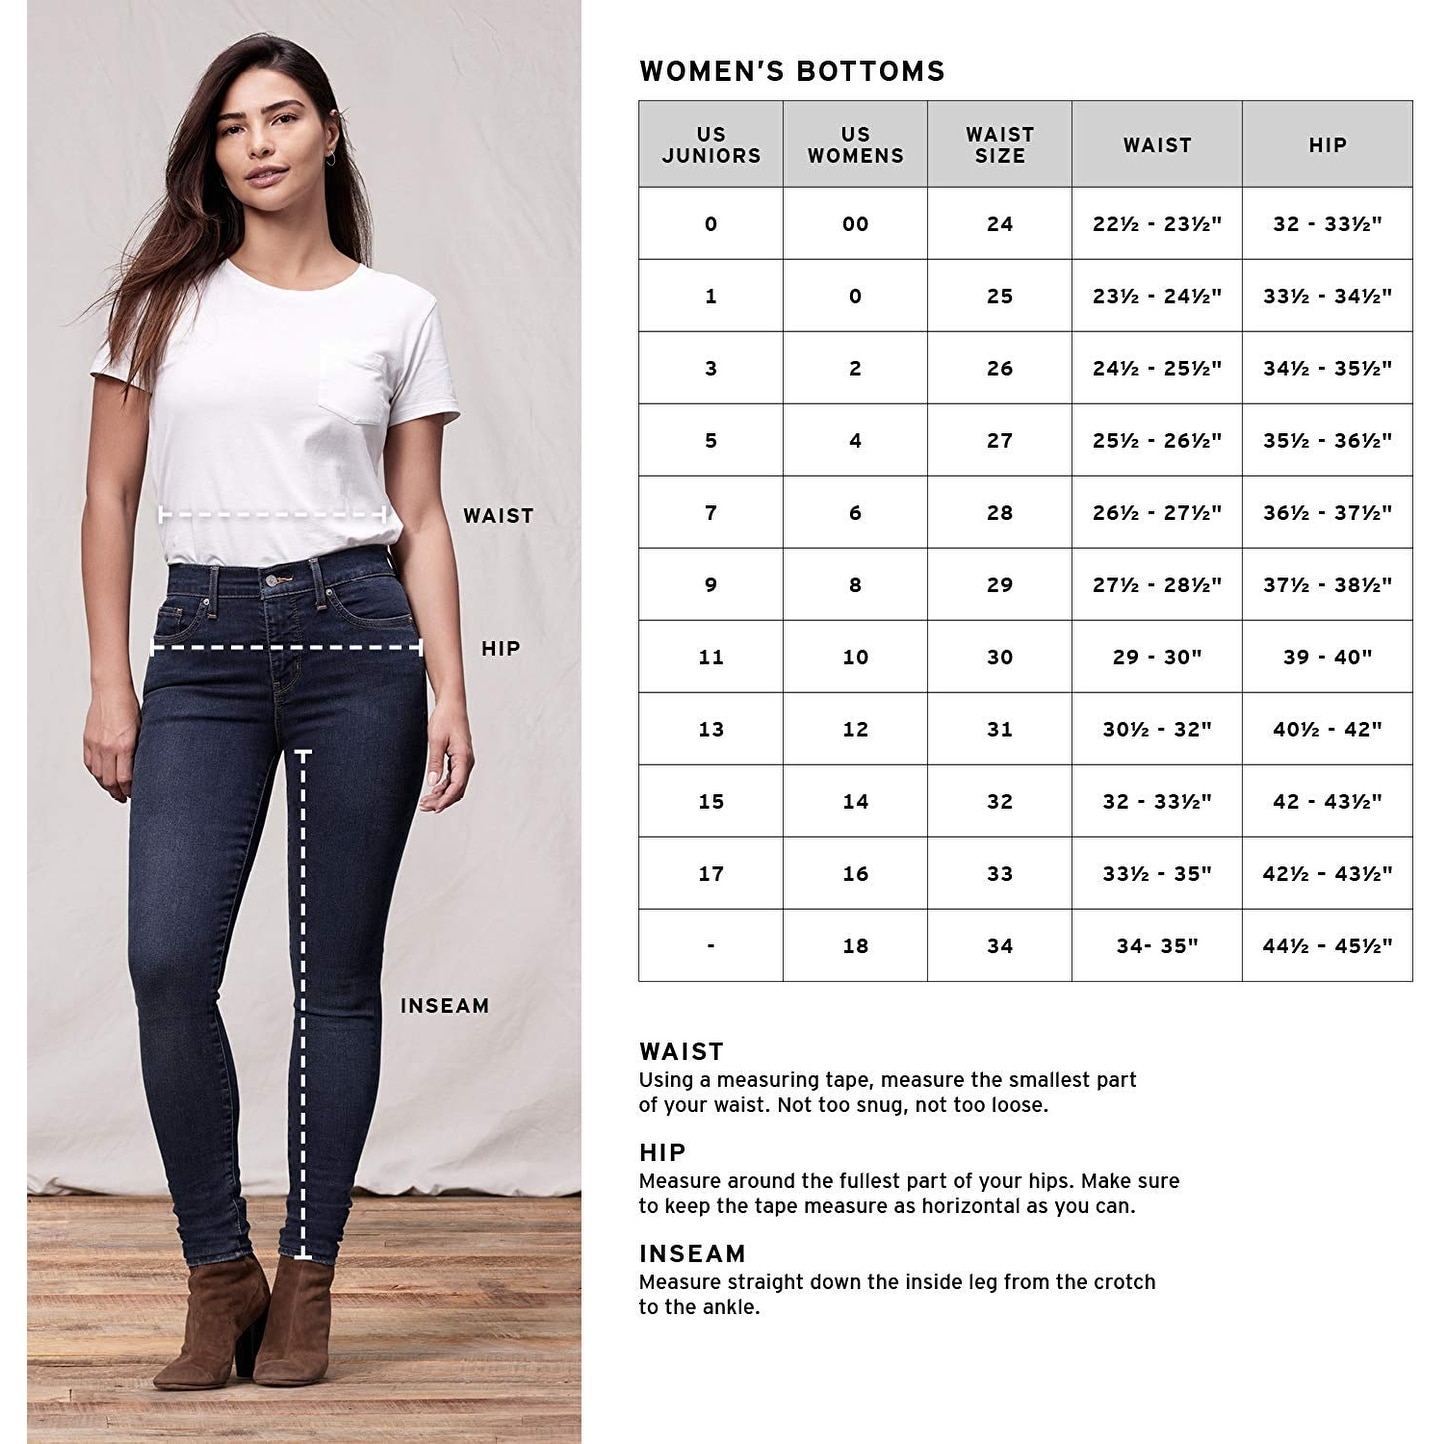 size 14 in women's levi jeans